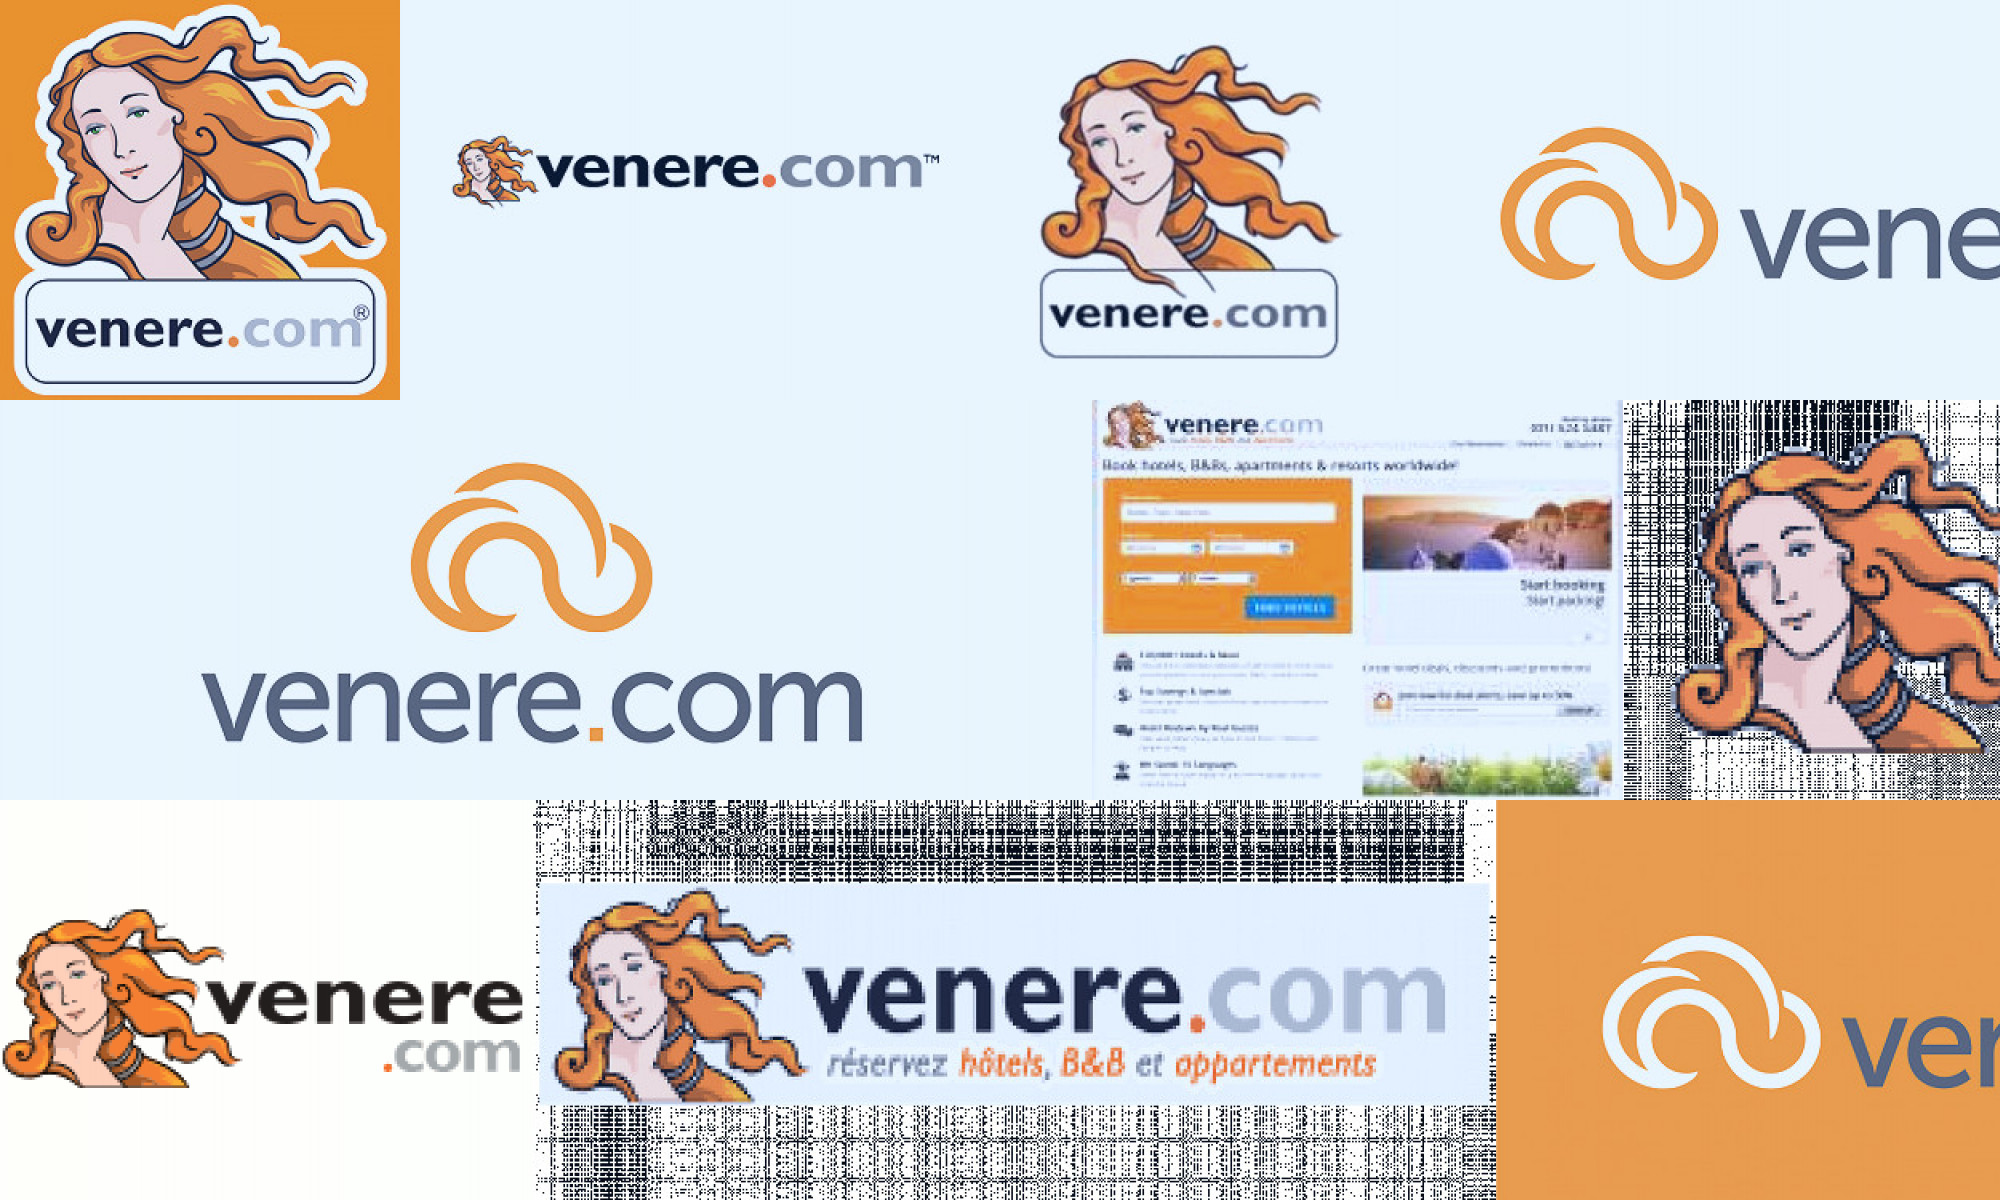 venere.com